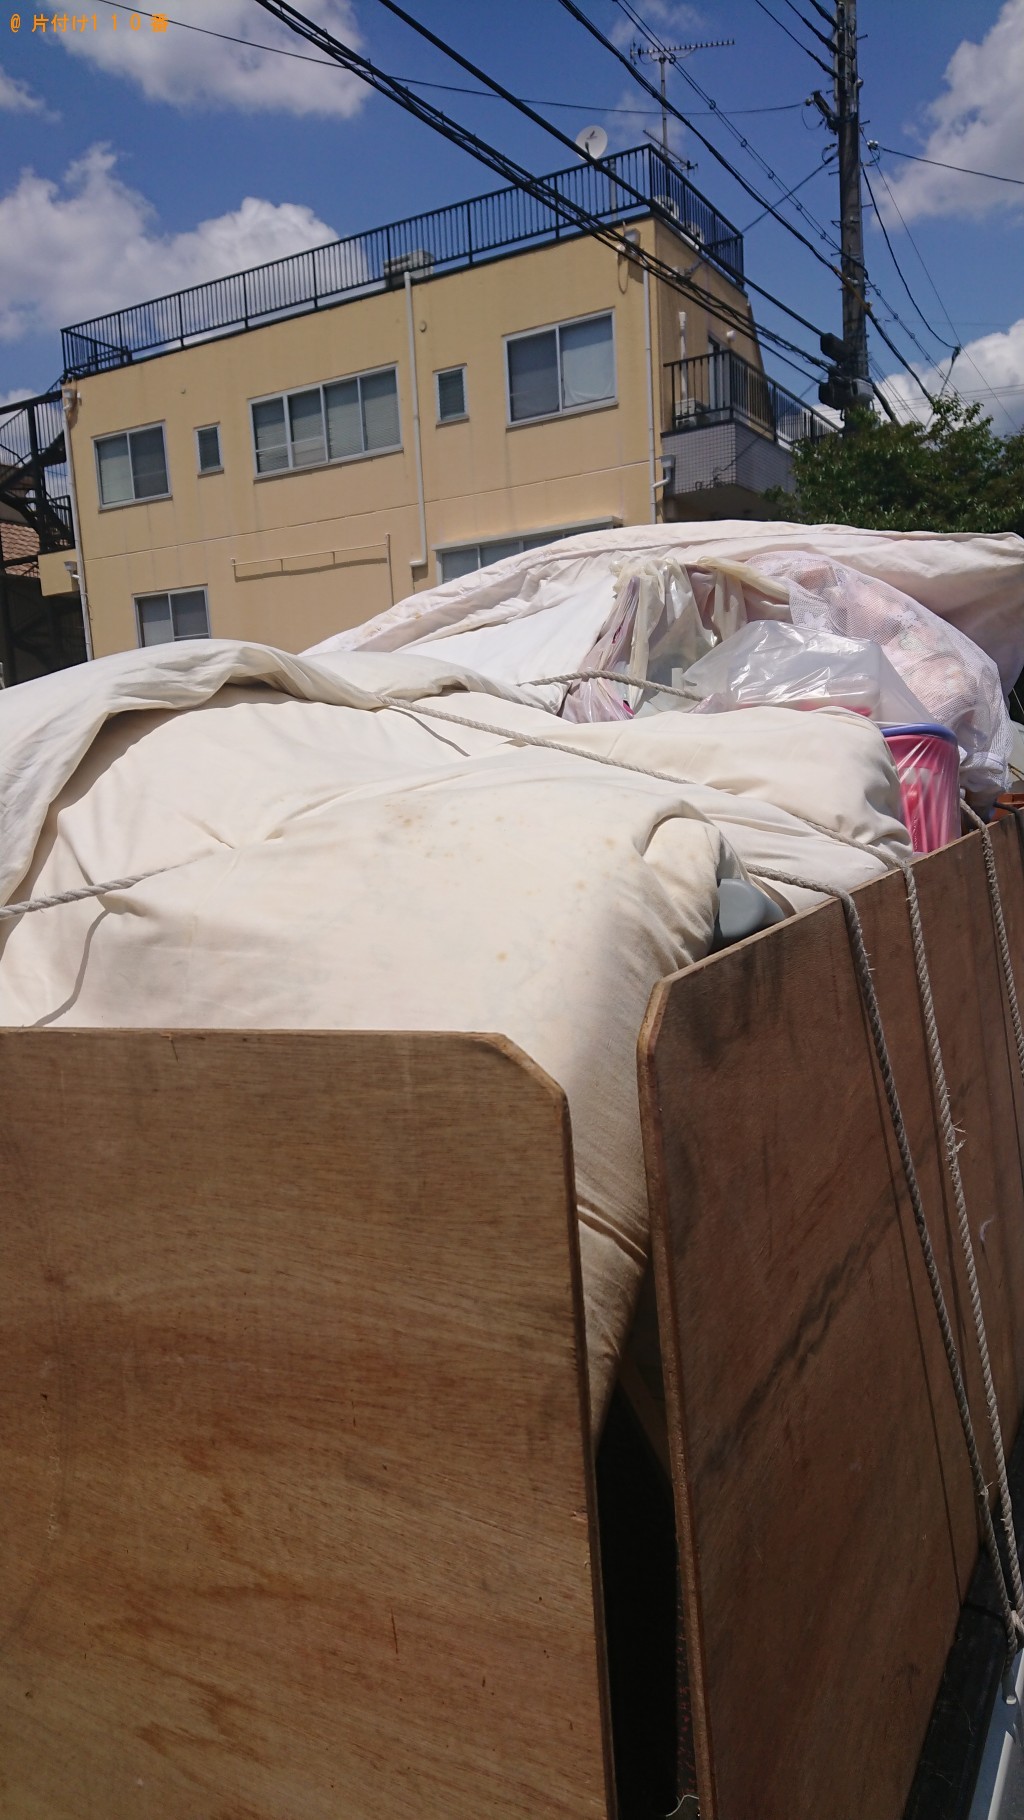 【伊丹市】遺品整理に伴い軽トラック1台程度の出張不用品回収・処分ご依頼